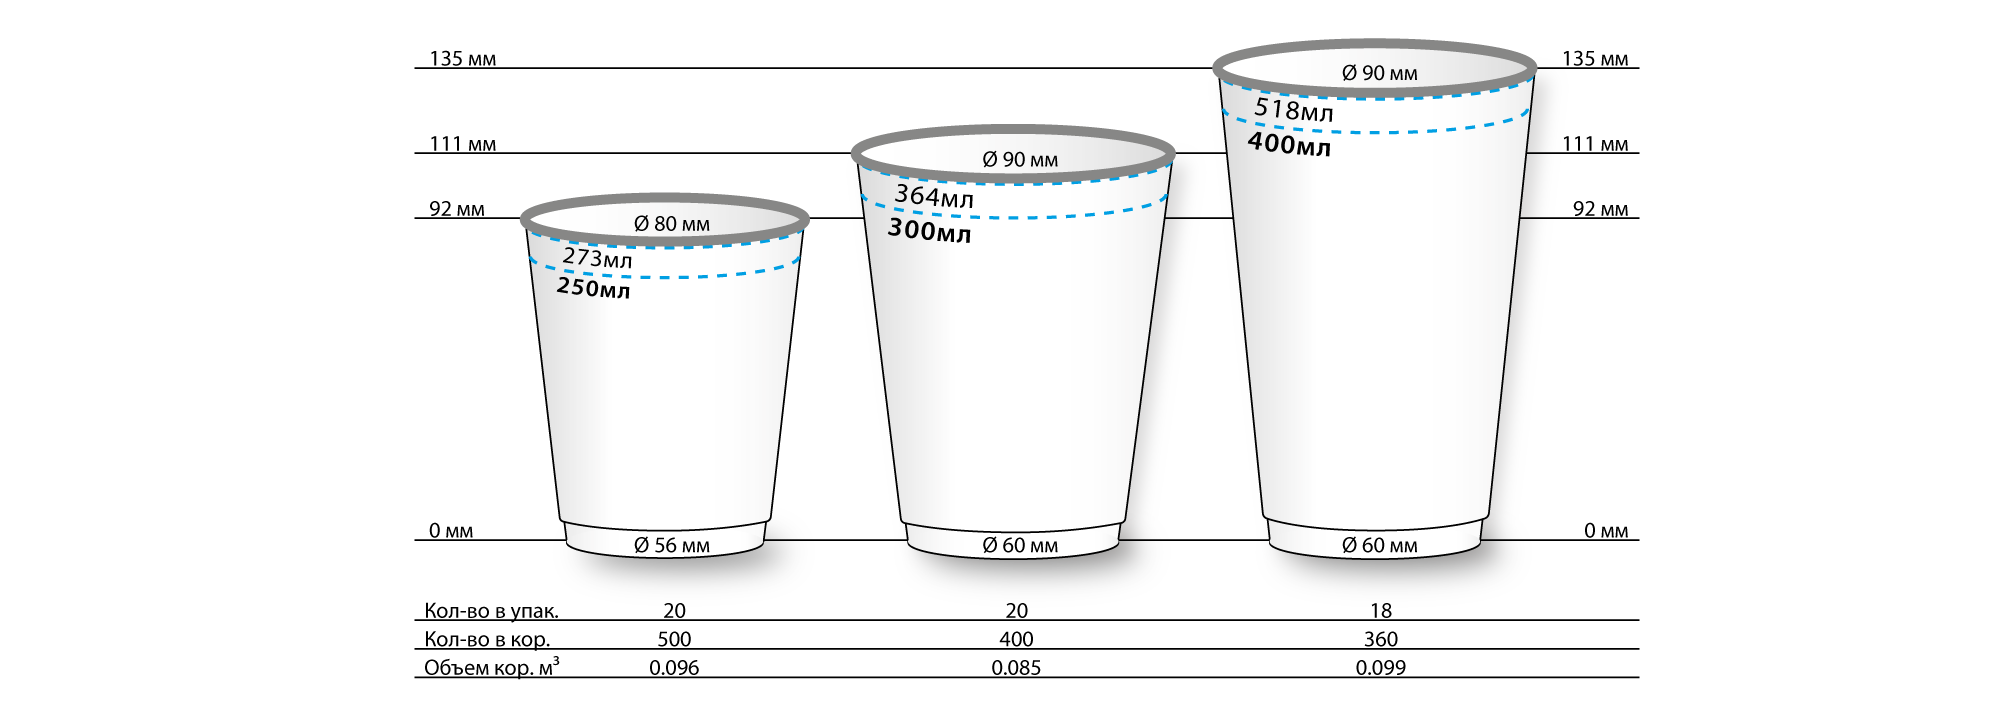 Размеры стаканчиков для кофе. Размер стакана. Размеры бумажных стаканчиков. Размеры стаканов для кофе.